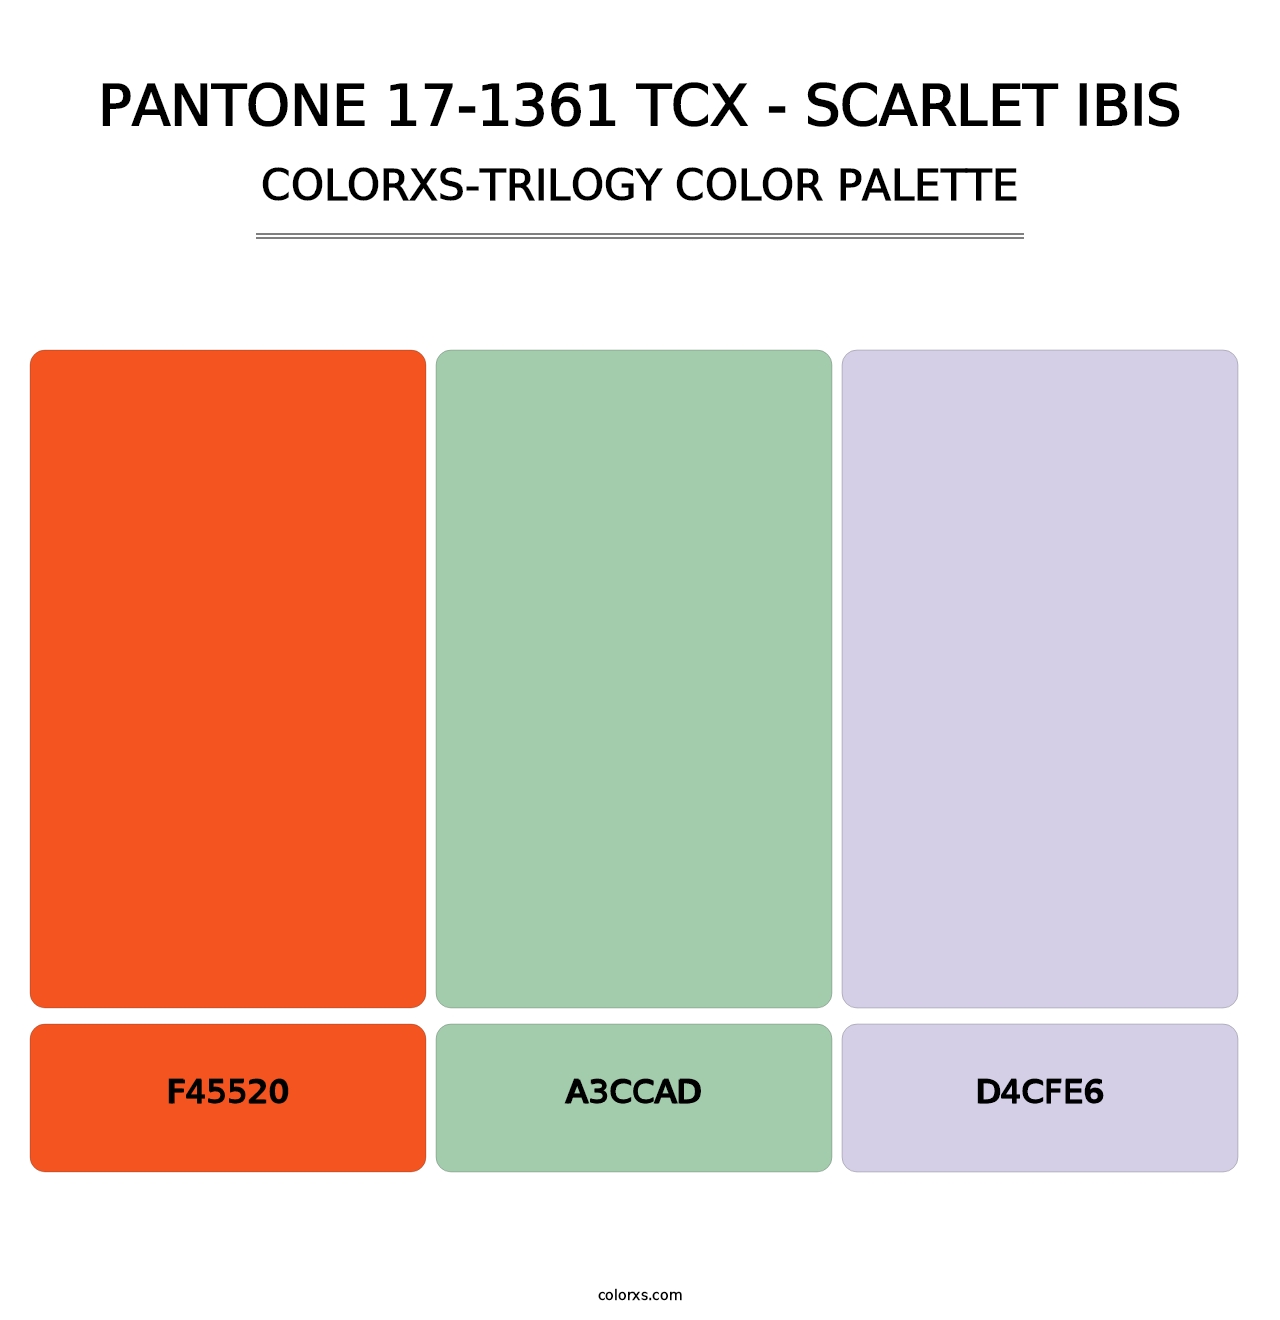 PANTONE 17-1361 TCX - Scarlet Ibis - Colorxs Trilogy Palette